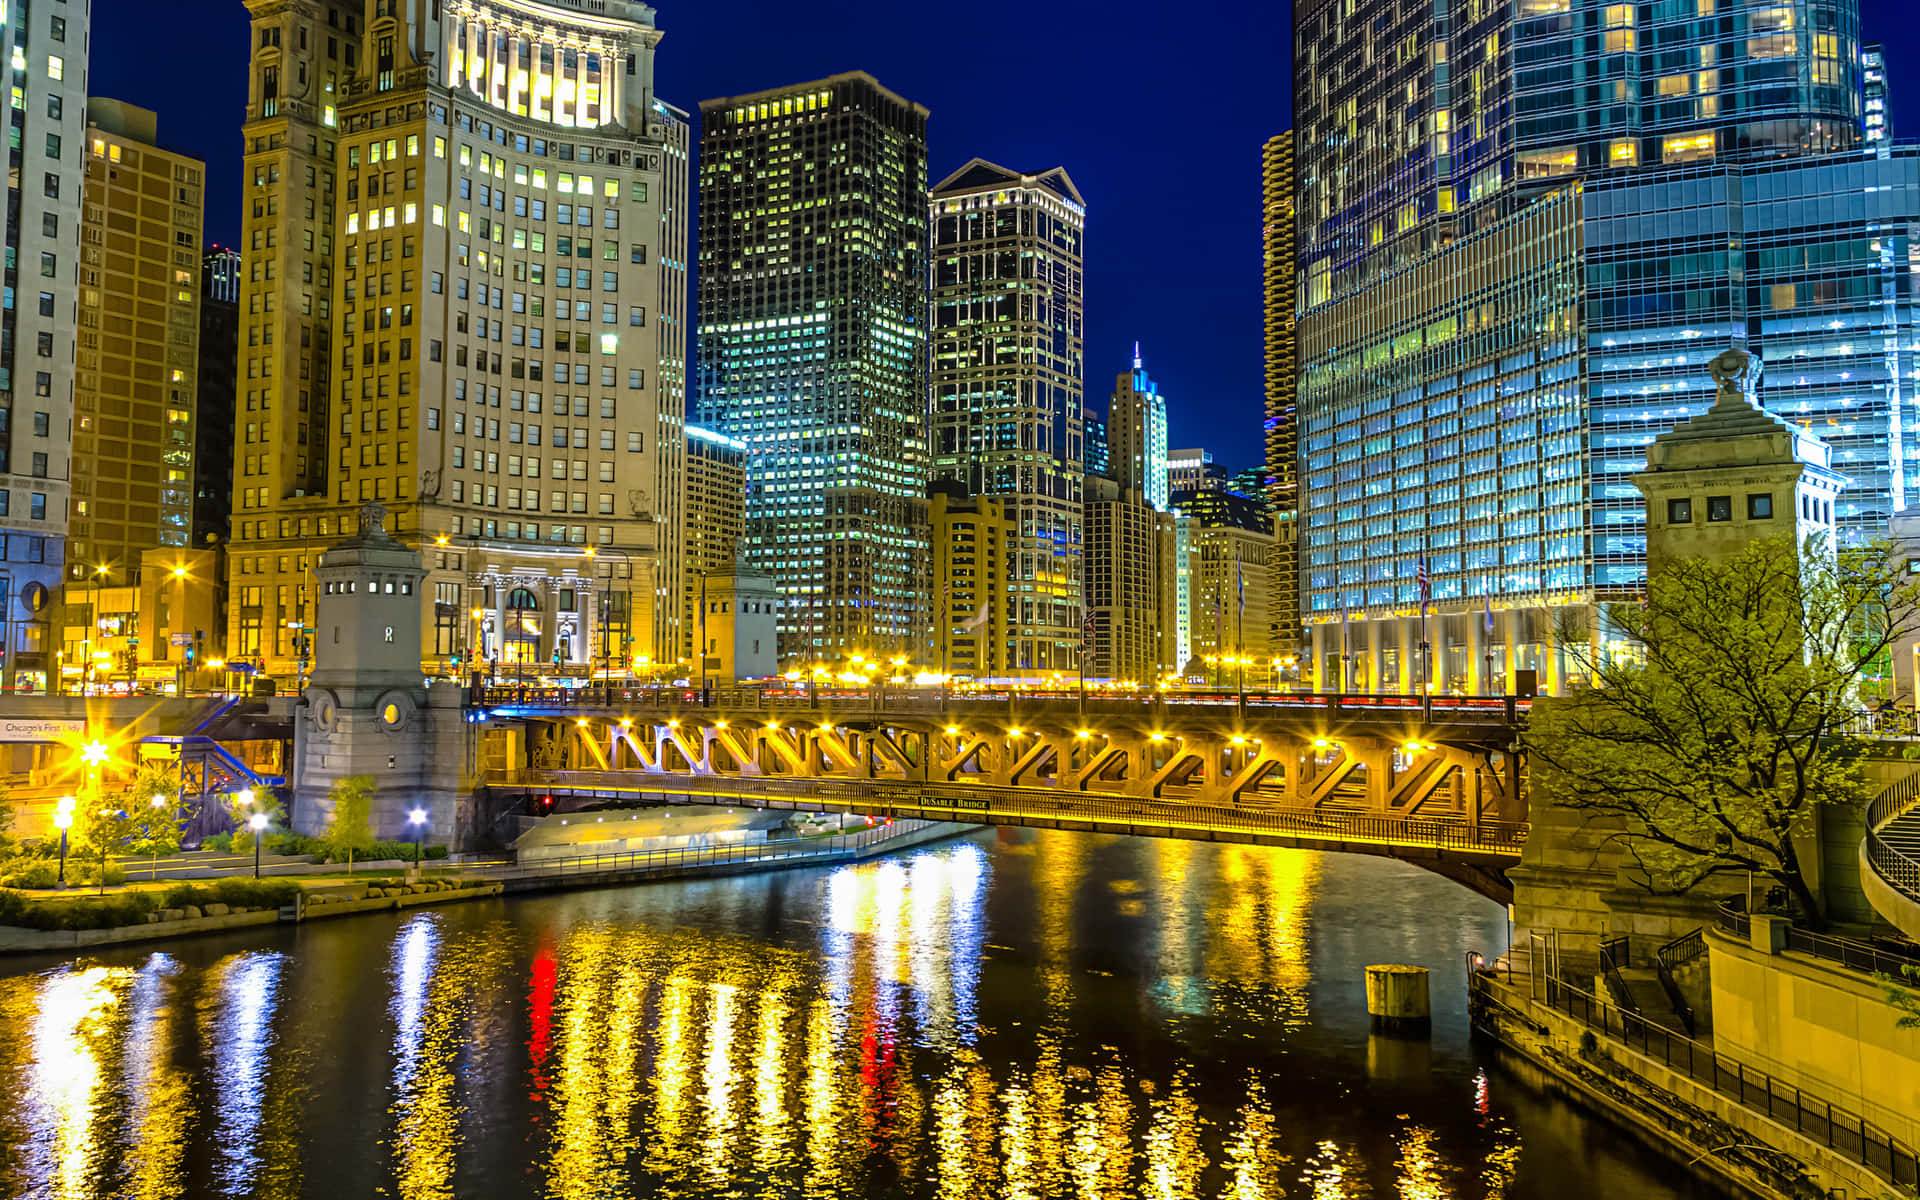 Upplyserden Blåsiga Staden: Njuter Av En Spektakulär Chicago City Natt På Dator- Eller Mobilbakgrund. Wallpaper